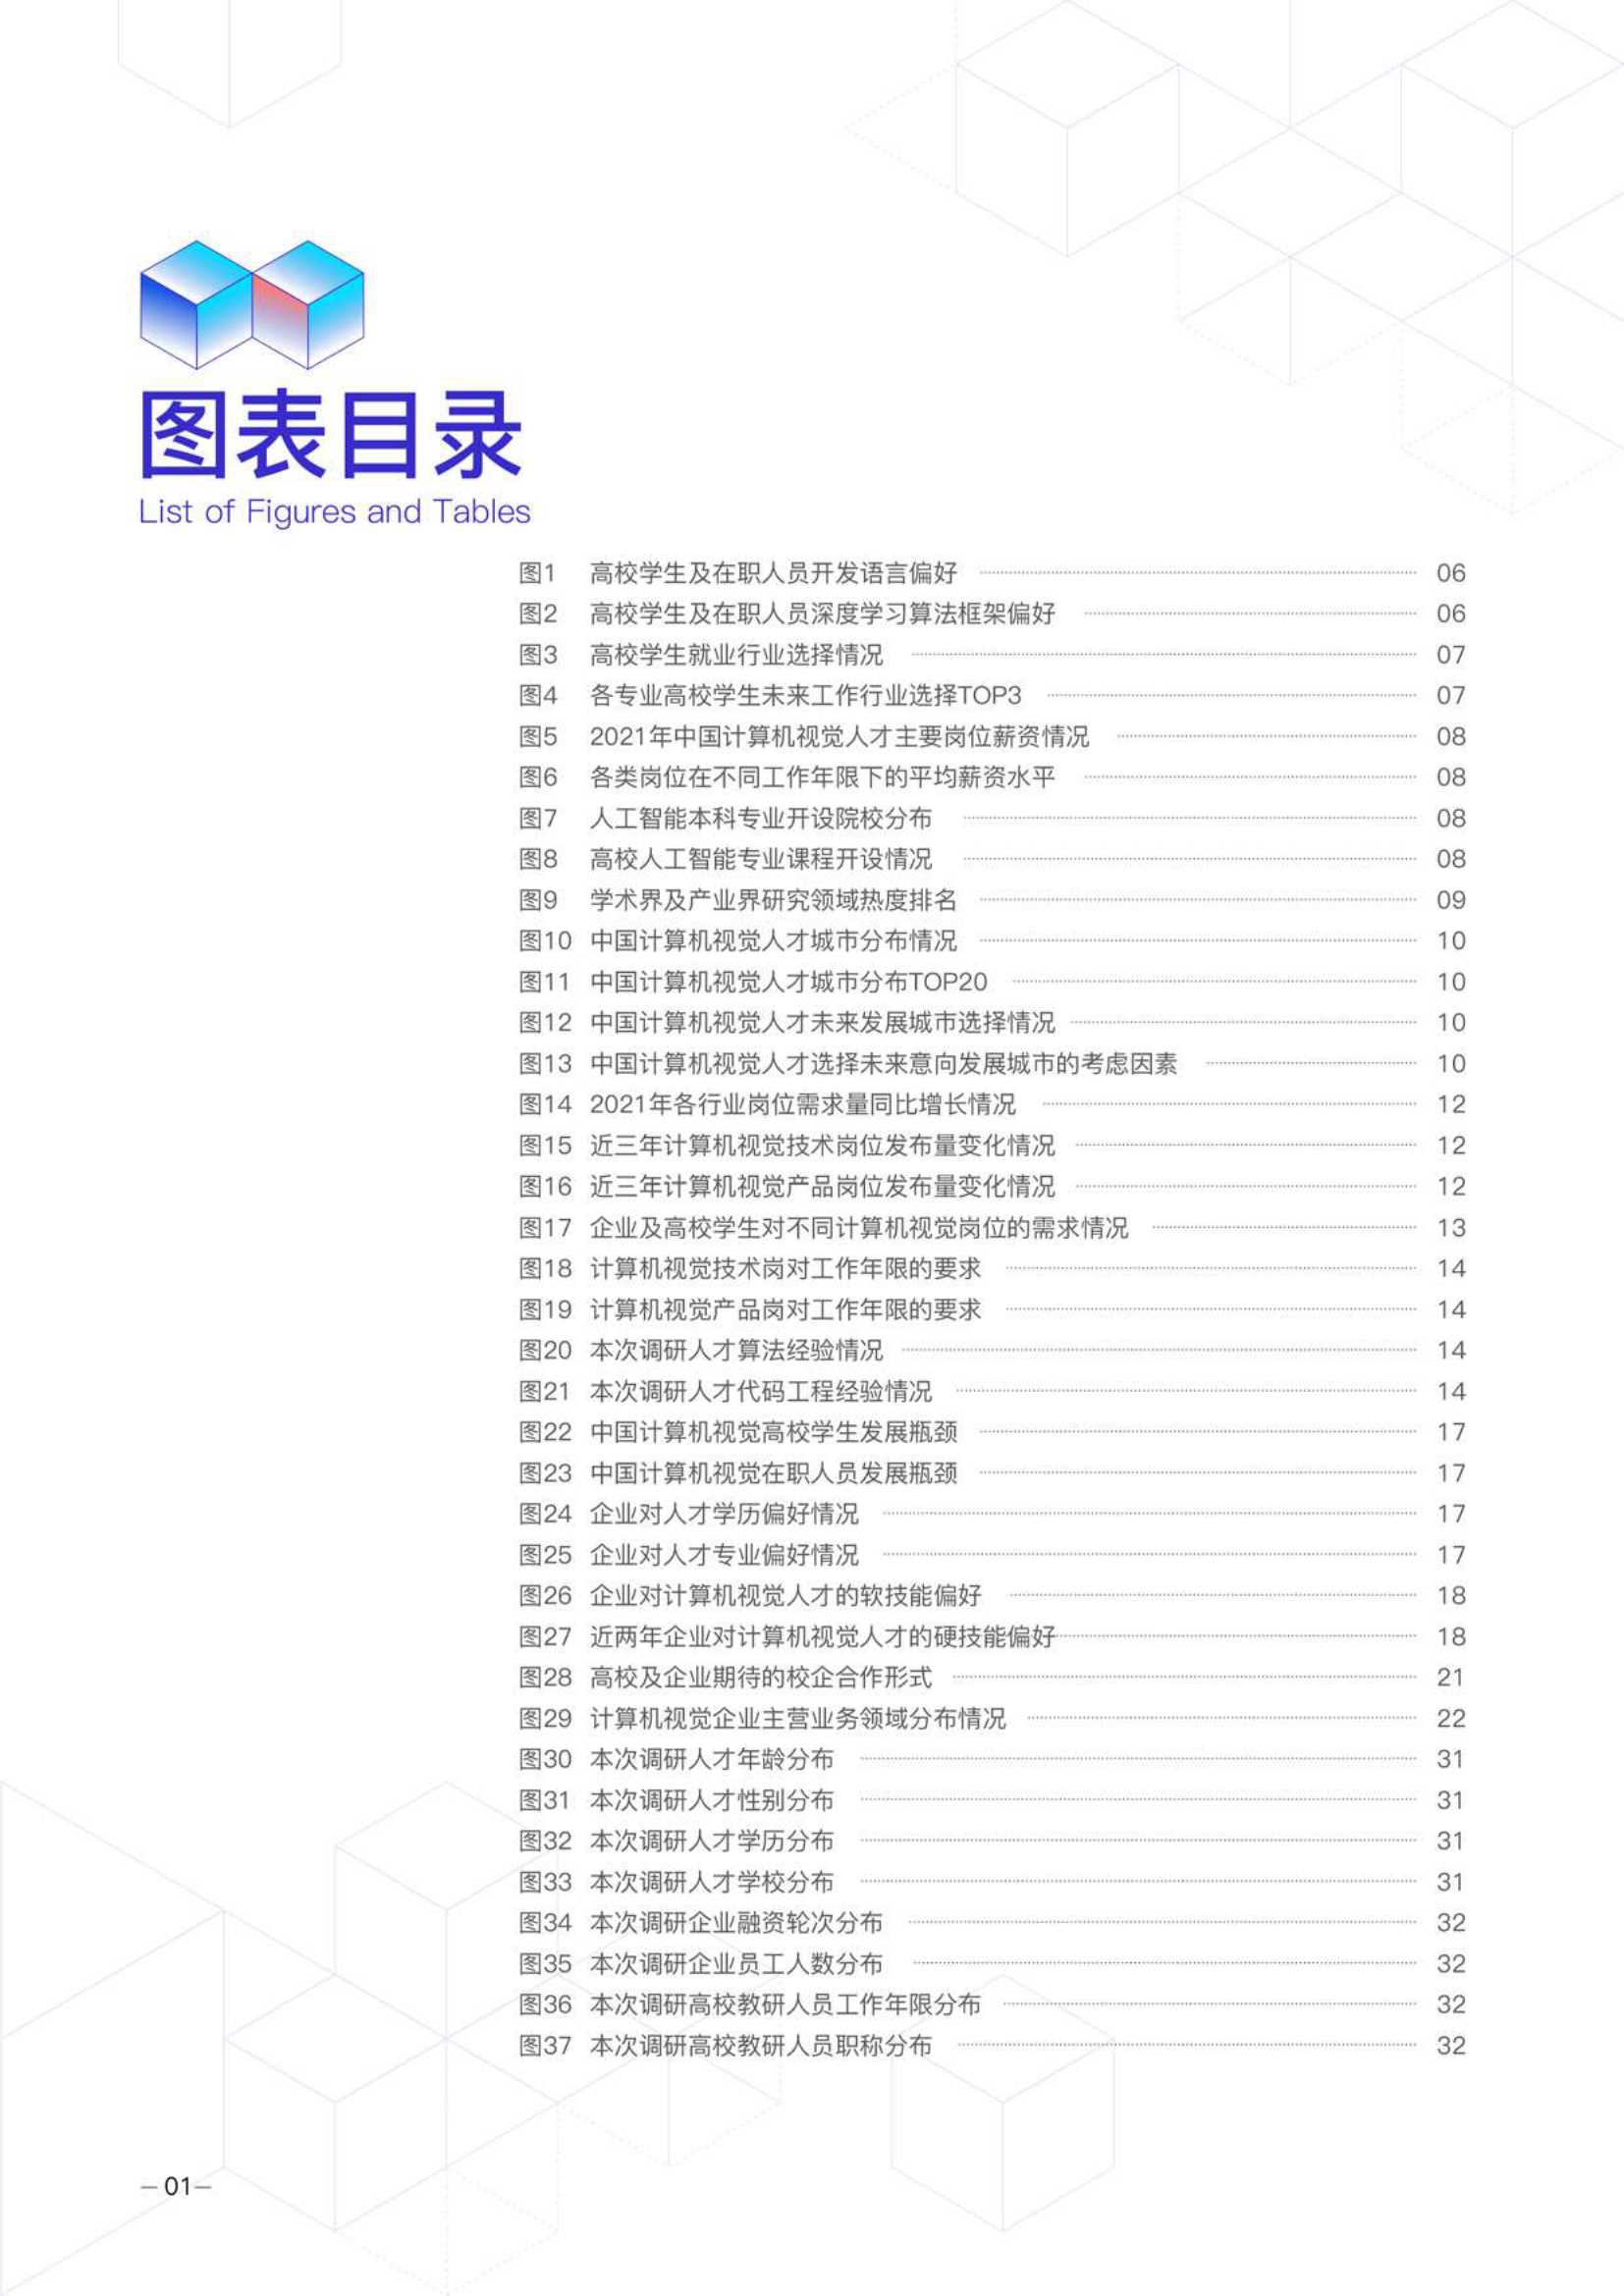 2021年度中国计算机视觉人才调研报告-2022.03-44页